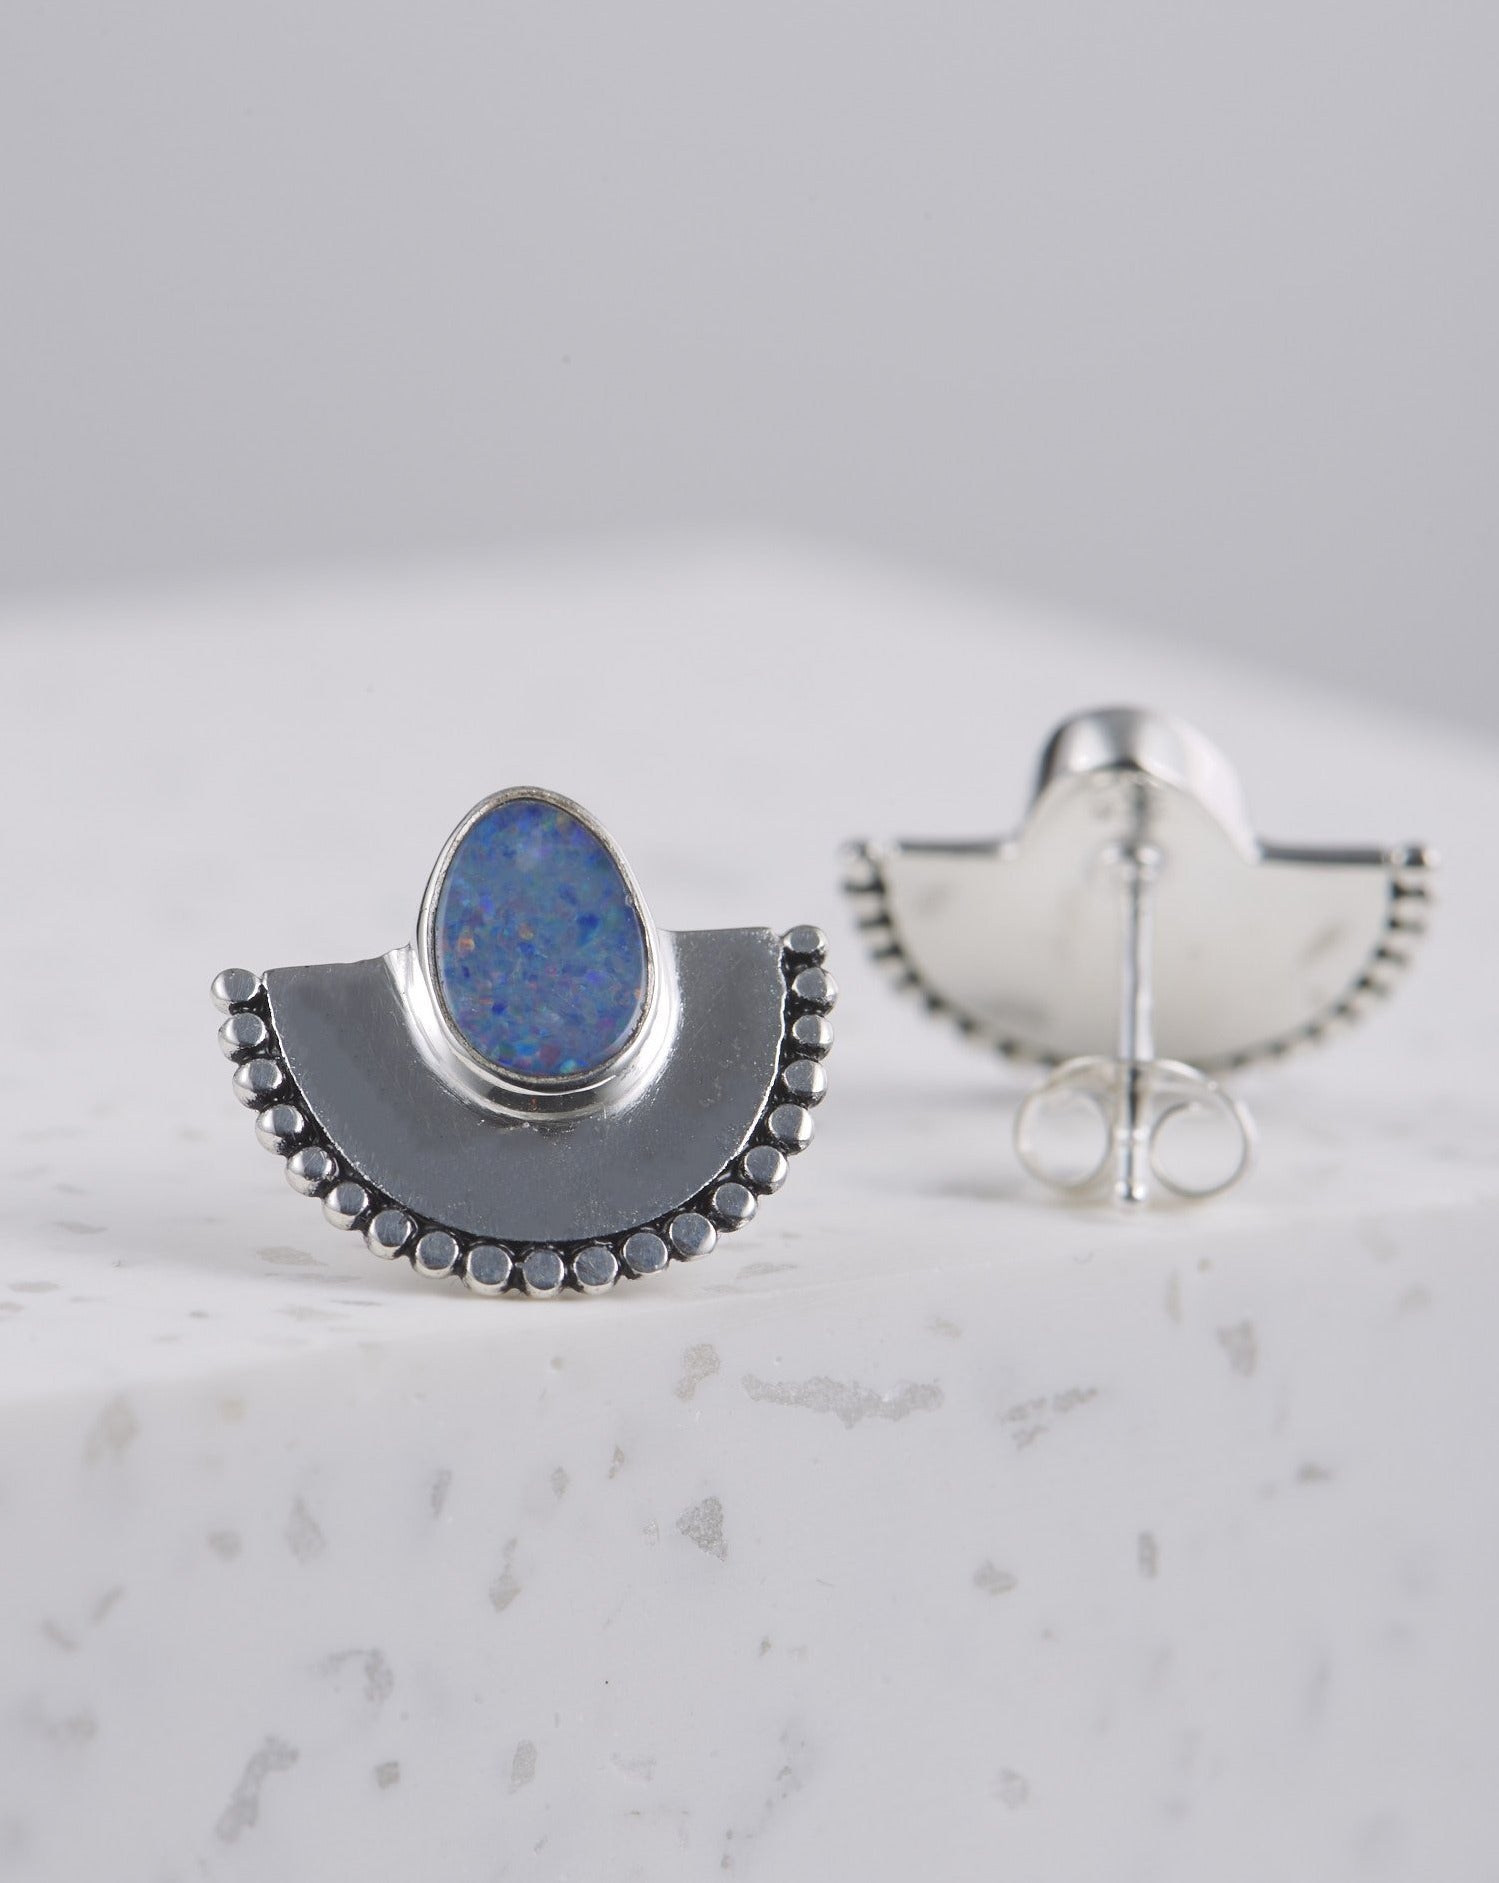 Handgemachte Ohrringe mit Opal Steinen | 925 Silber - wasserfest | Fair und umweltschonend auf Bali handgefertigt | VERLAN Jewellery | Fairfashion 